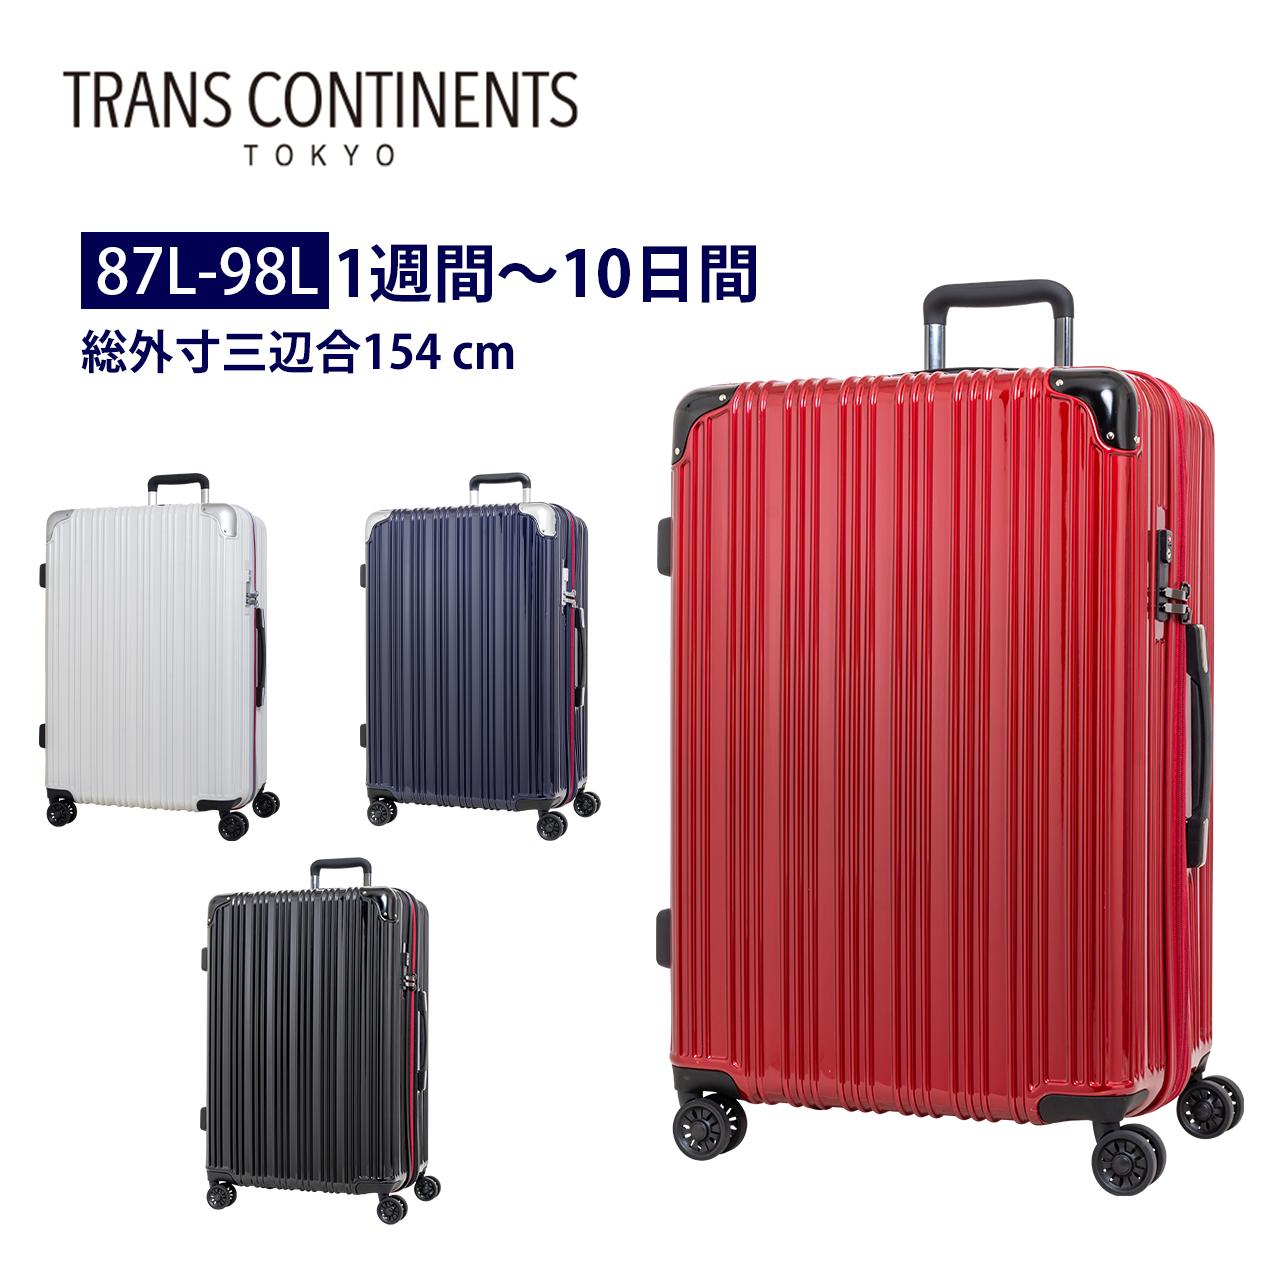 容量が増やせる拡張機能付き 大型 大容量 スーツケース キャリーケースTC-0790-67 87-98Lbr>トランスコンチネンツ (TRANS CONTINENTS） TRANS CONTINENTS スーツケース 大型 大容量 拡張機能付き キャリーケース キャリーバッグ TC-0790-67 87-98L 8日 9日 7泊 8泊 海外 国内 旅行 ビジネス 出張 ホームステイトラベル 女子旅 Go To Travel トランスコンチネンツ